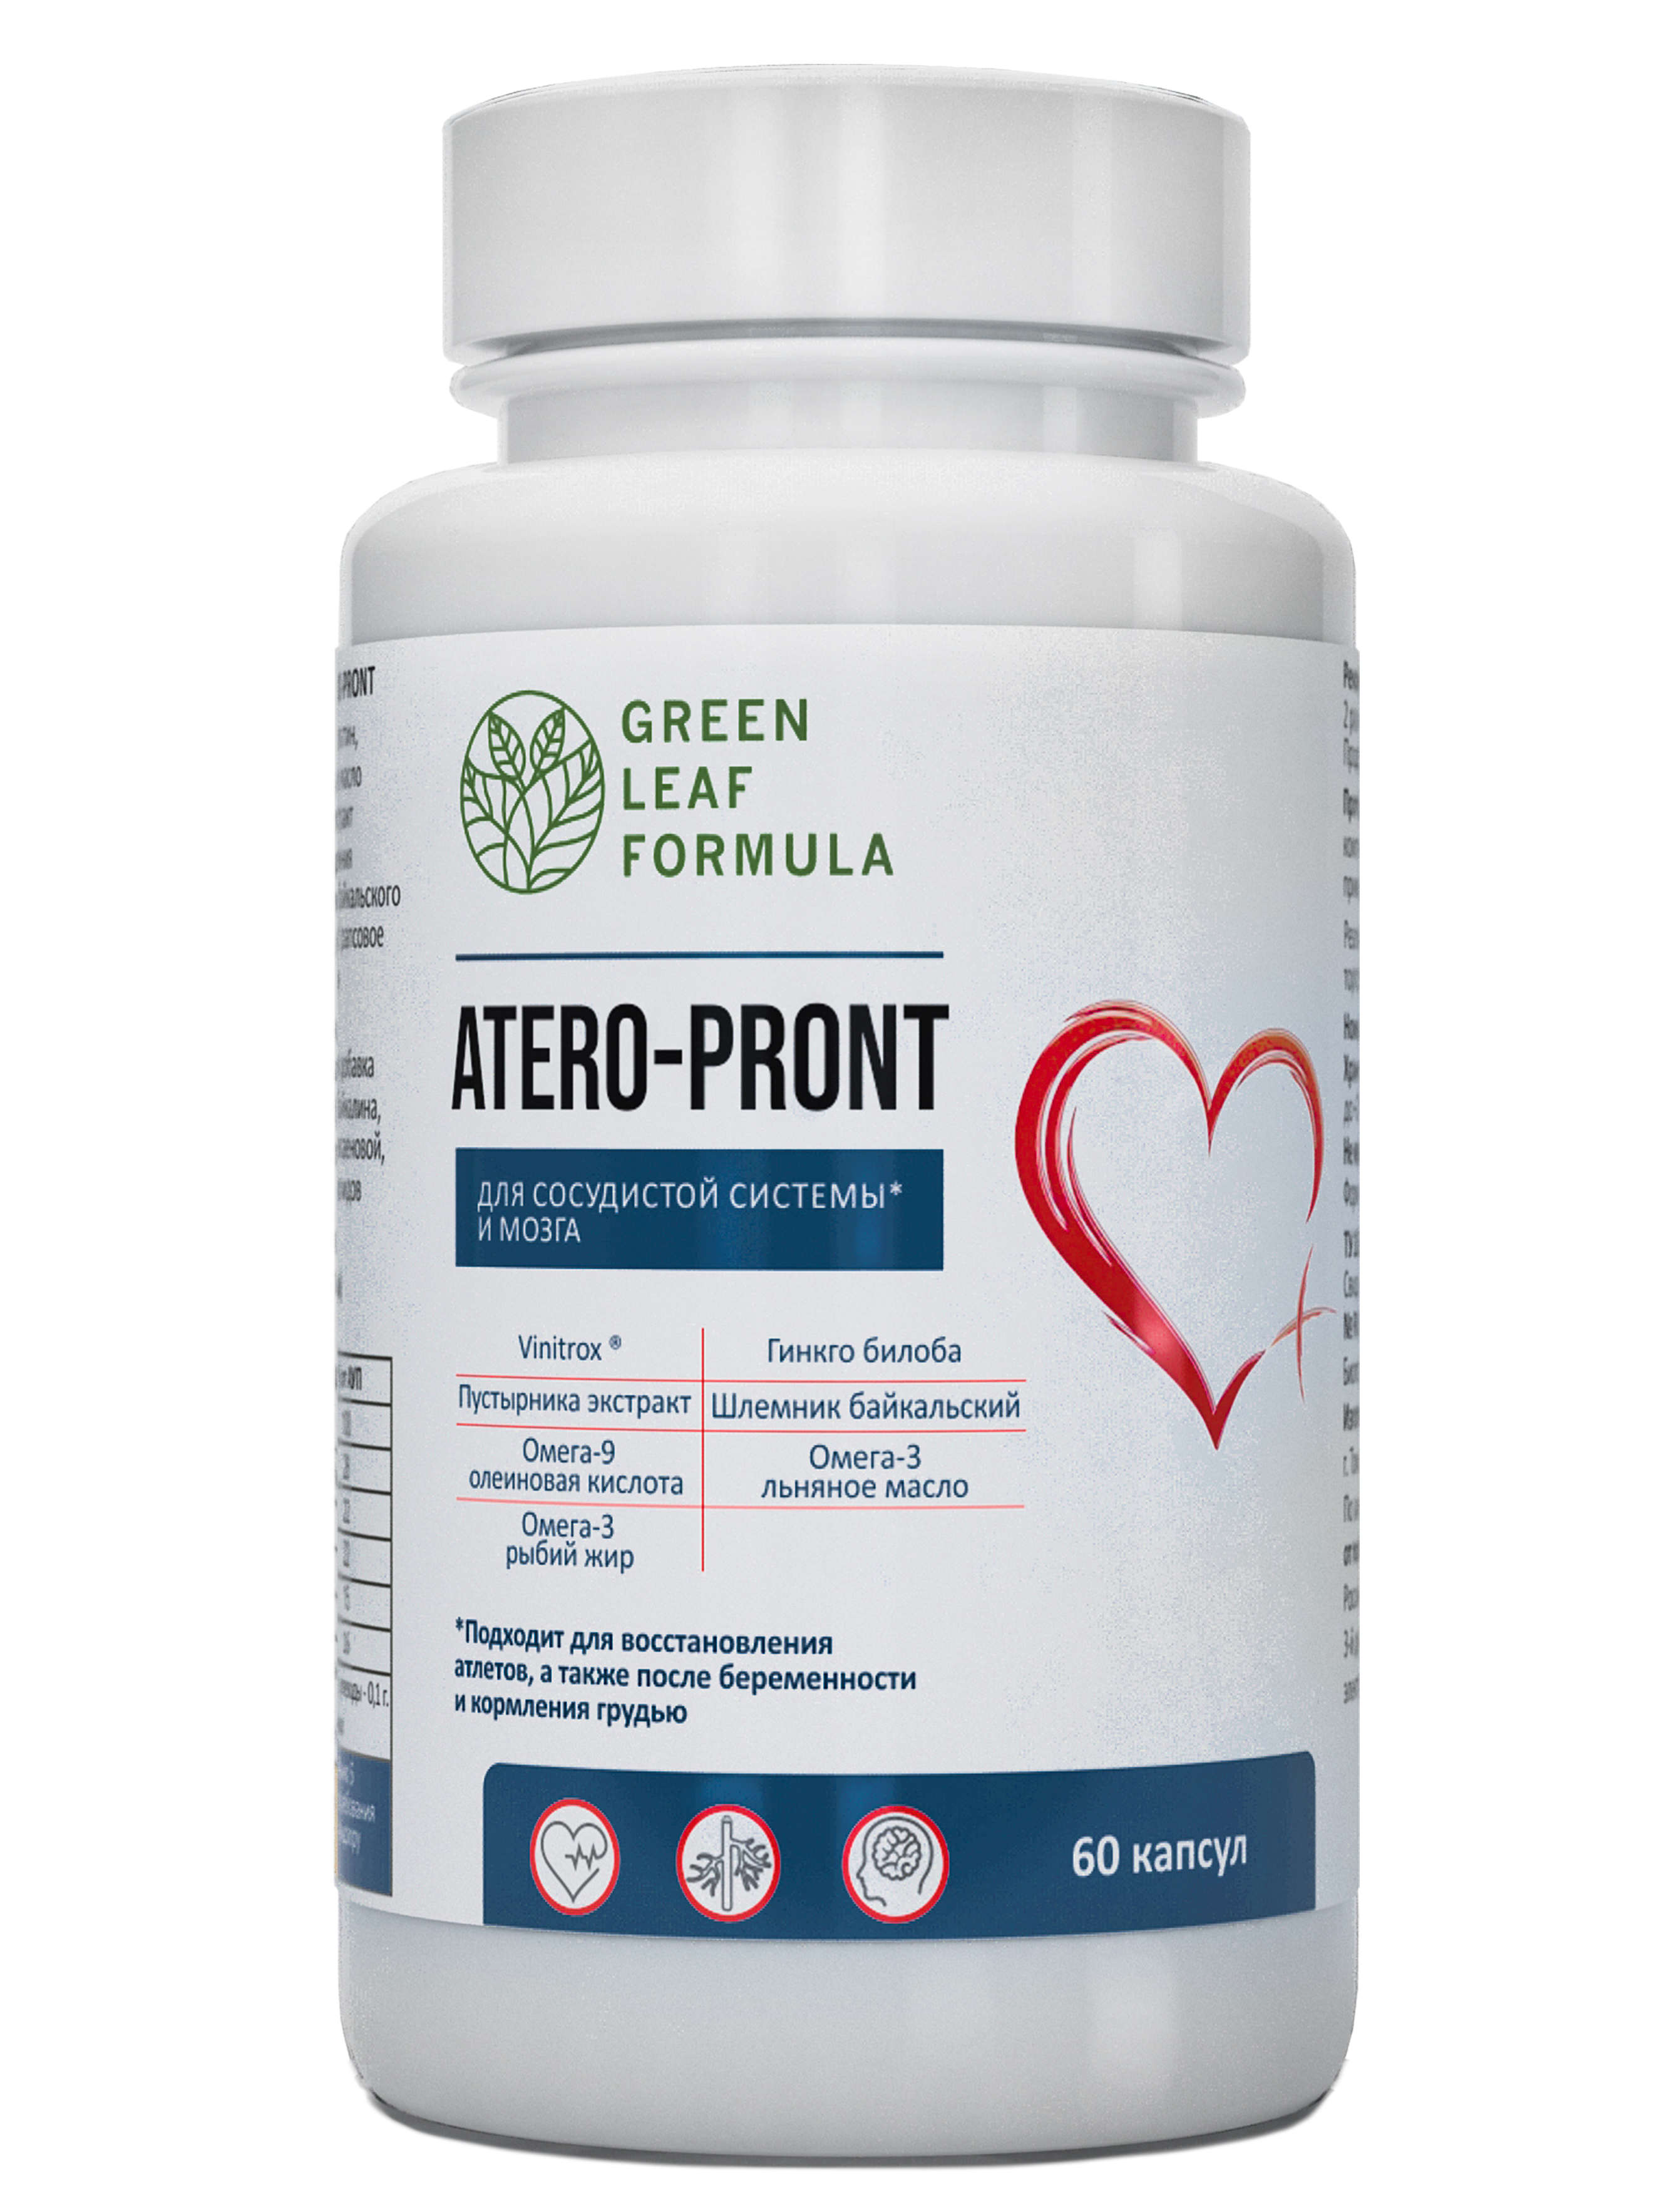 ATERO-PRONT Green Leaf Formula витамины для сердца и сосудов и мозга 790 мг капсулы 60 шт.